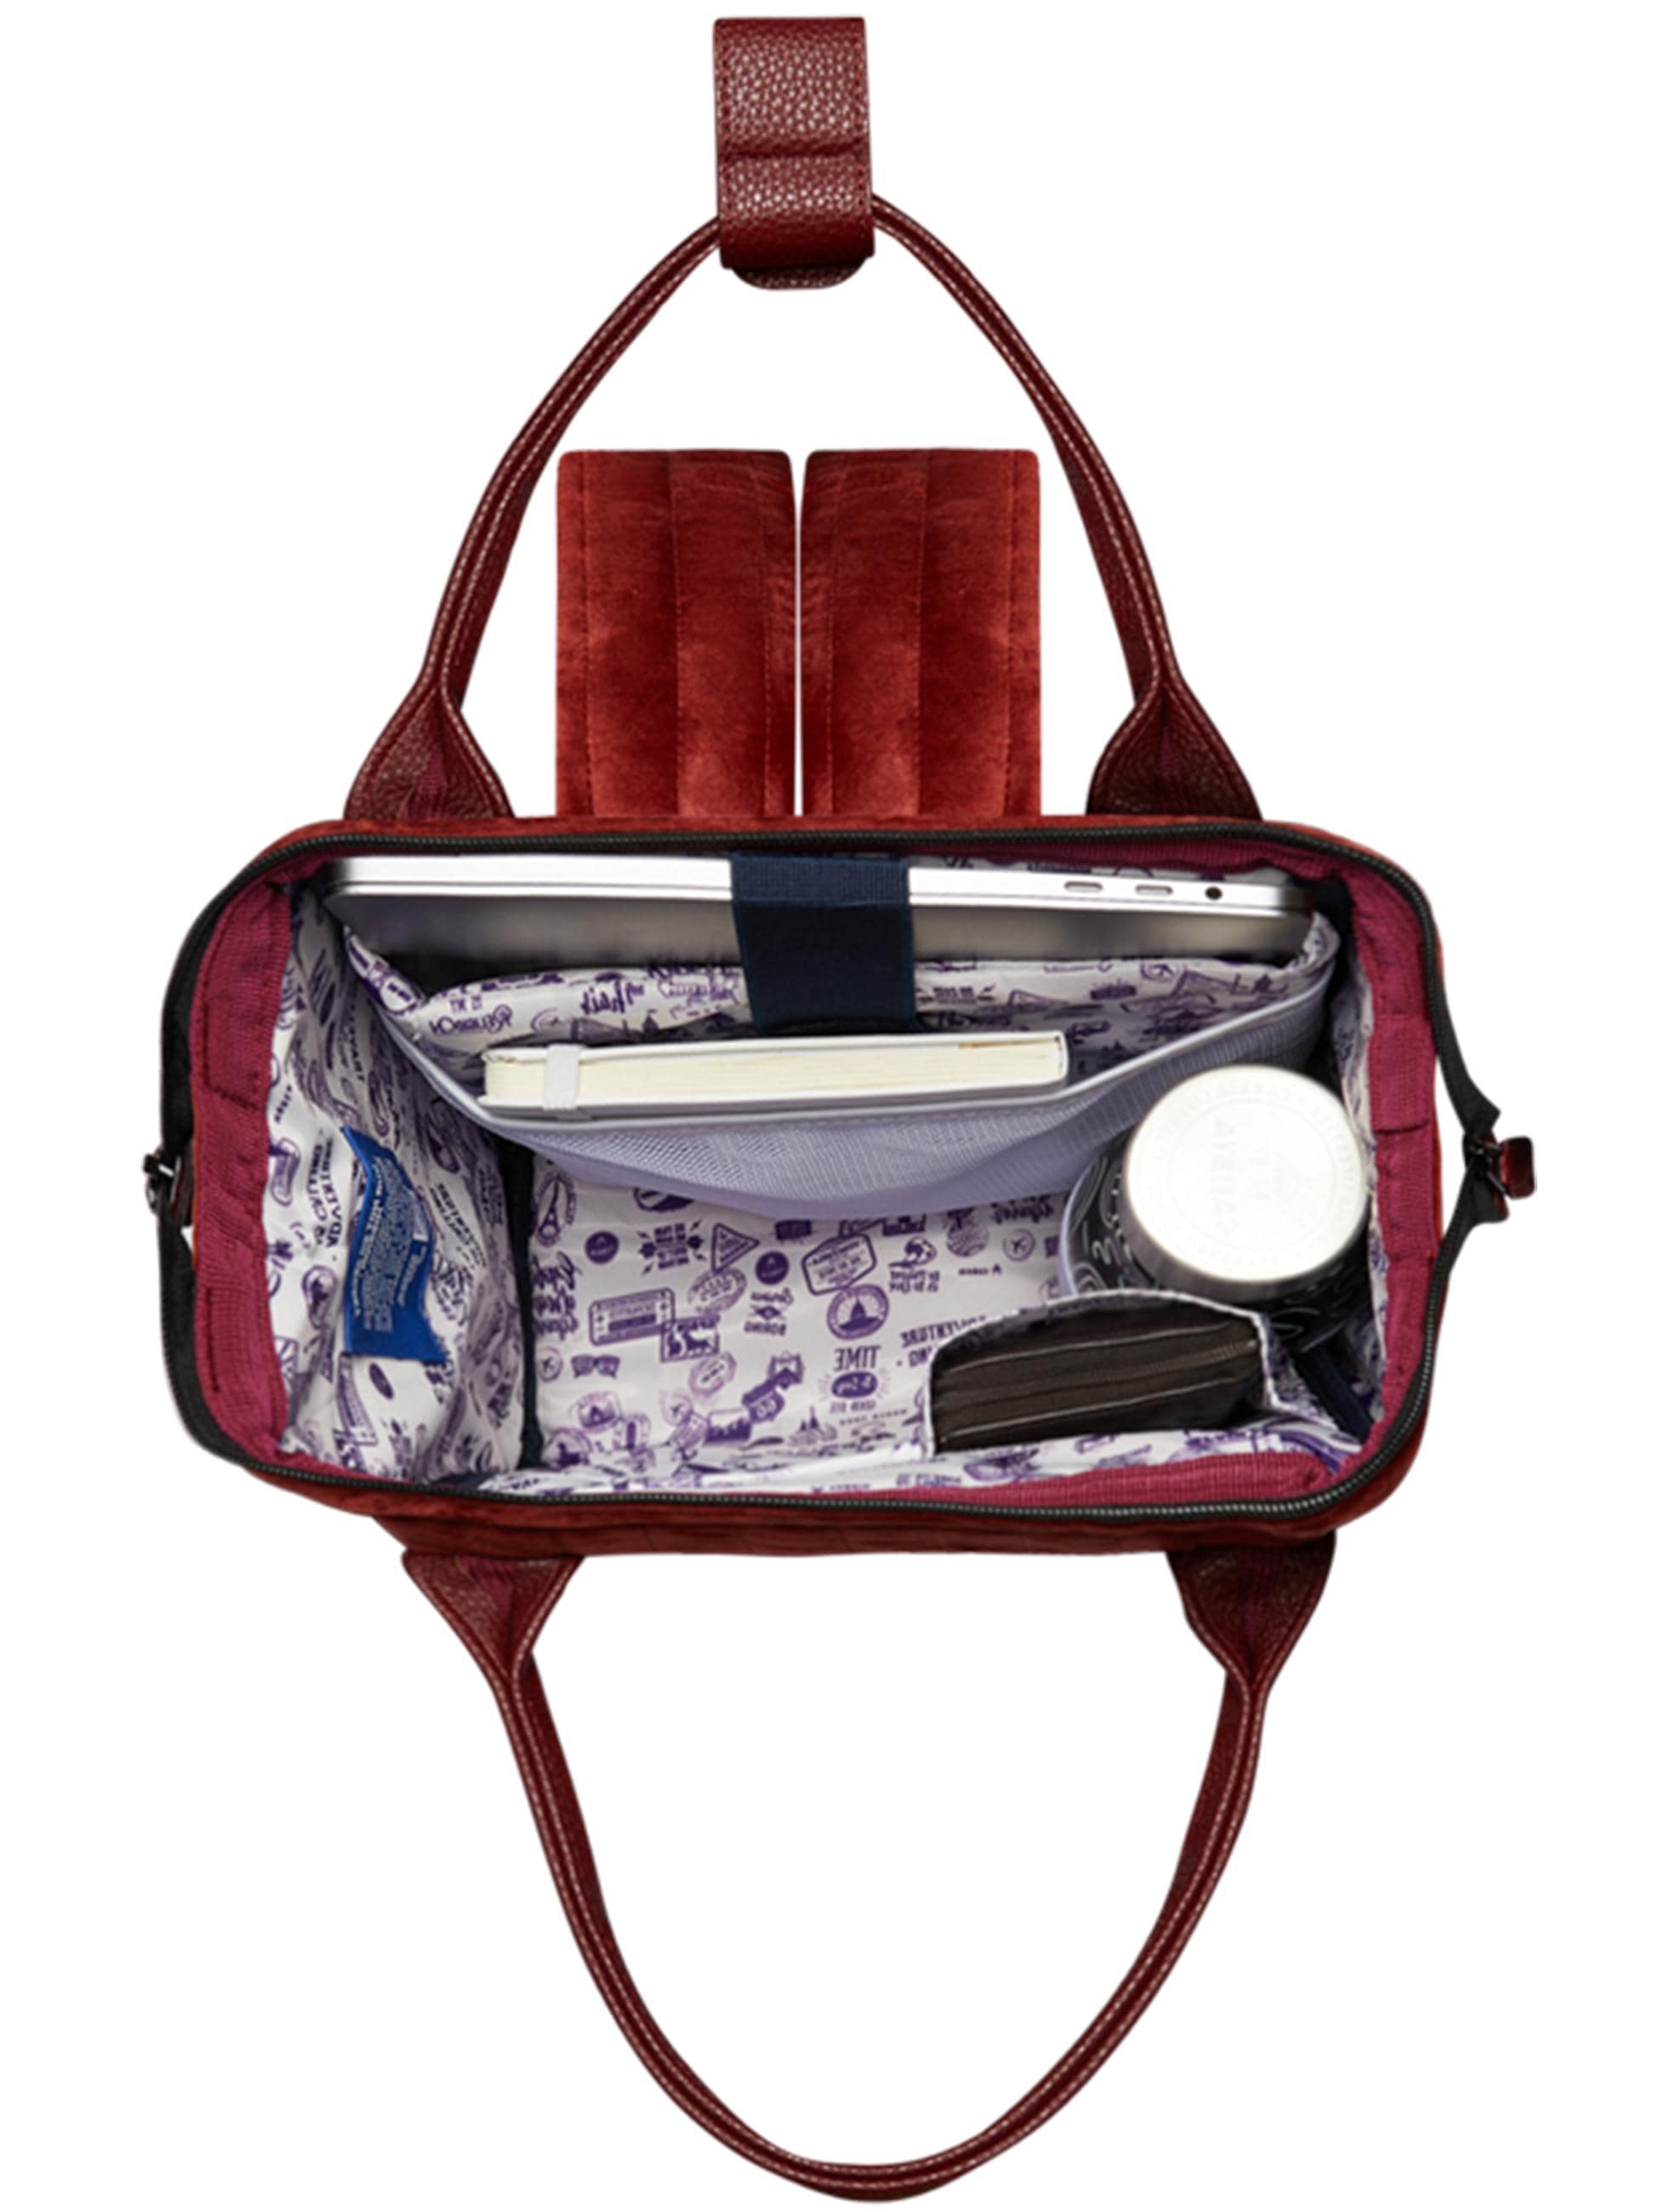 CABAIA Tagesrucksack »Tagesrucksack Adventurer S Quilted«, Gesteppter Rucksack mit austauschbaren Vordertaschen